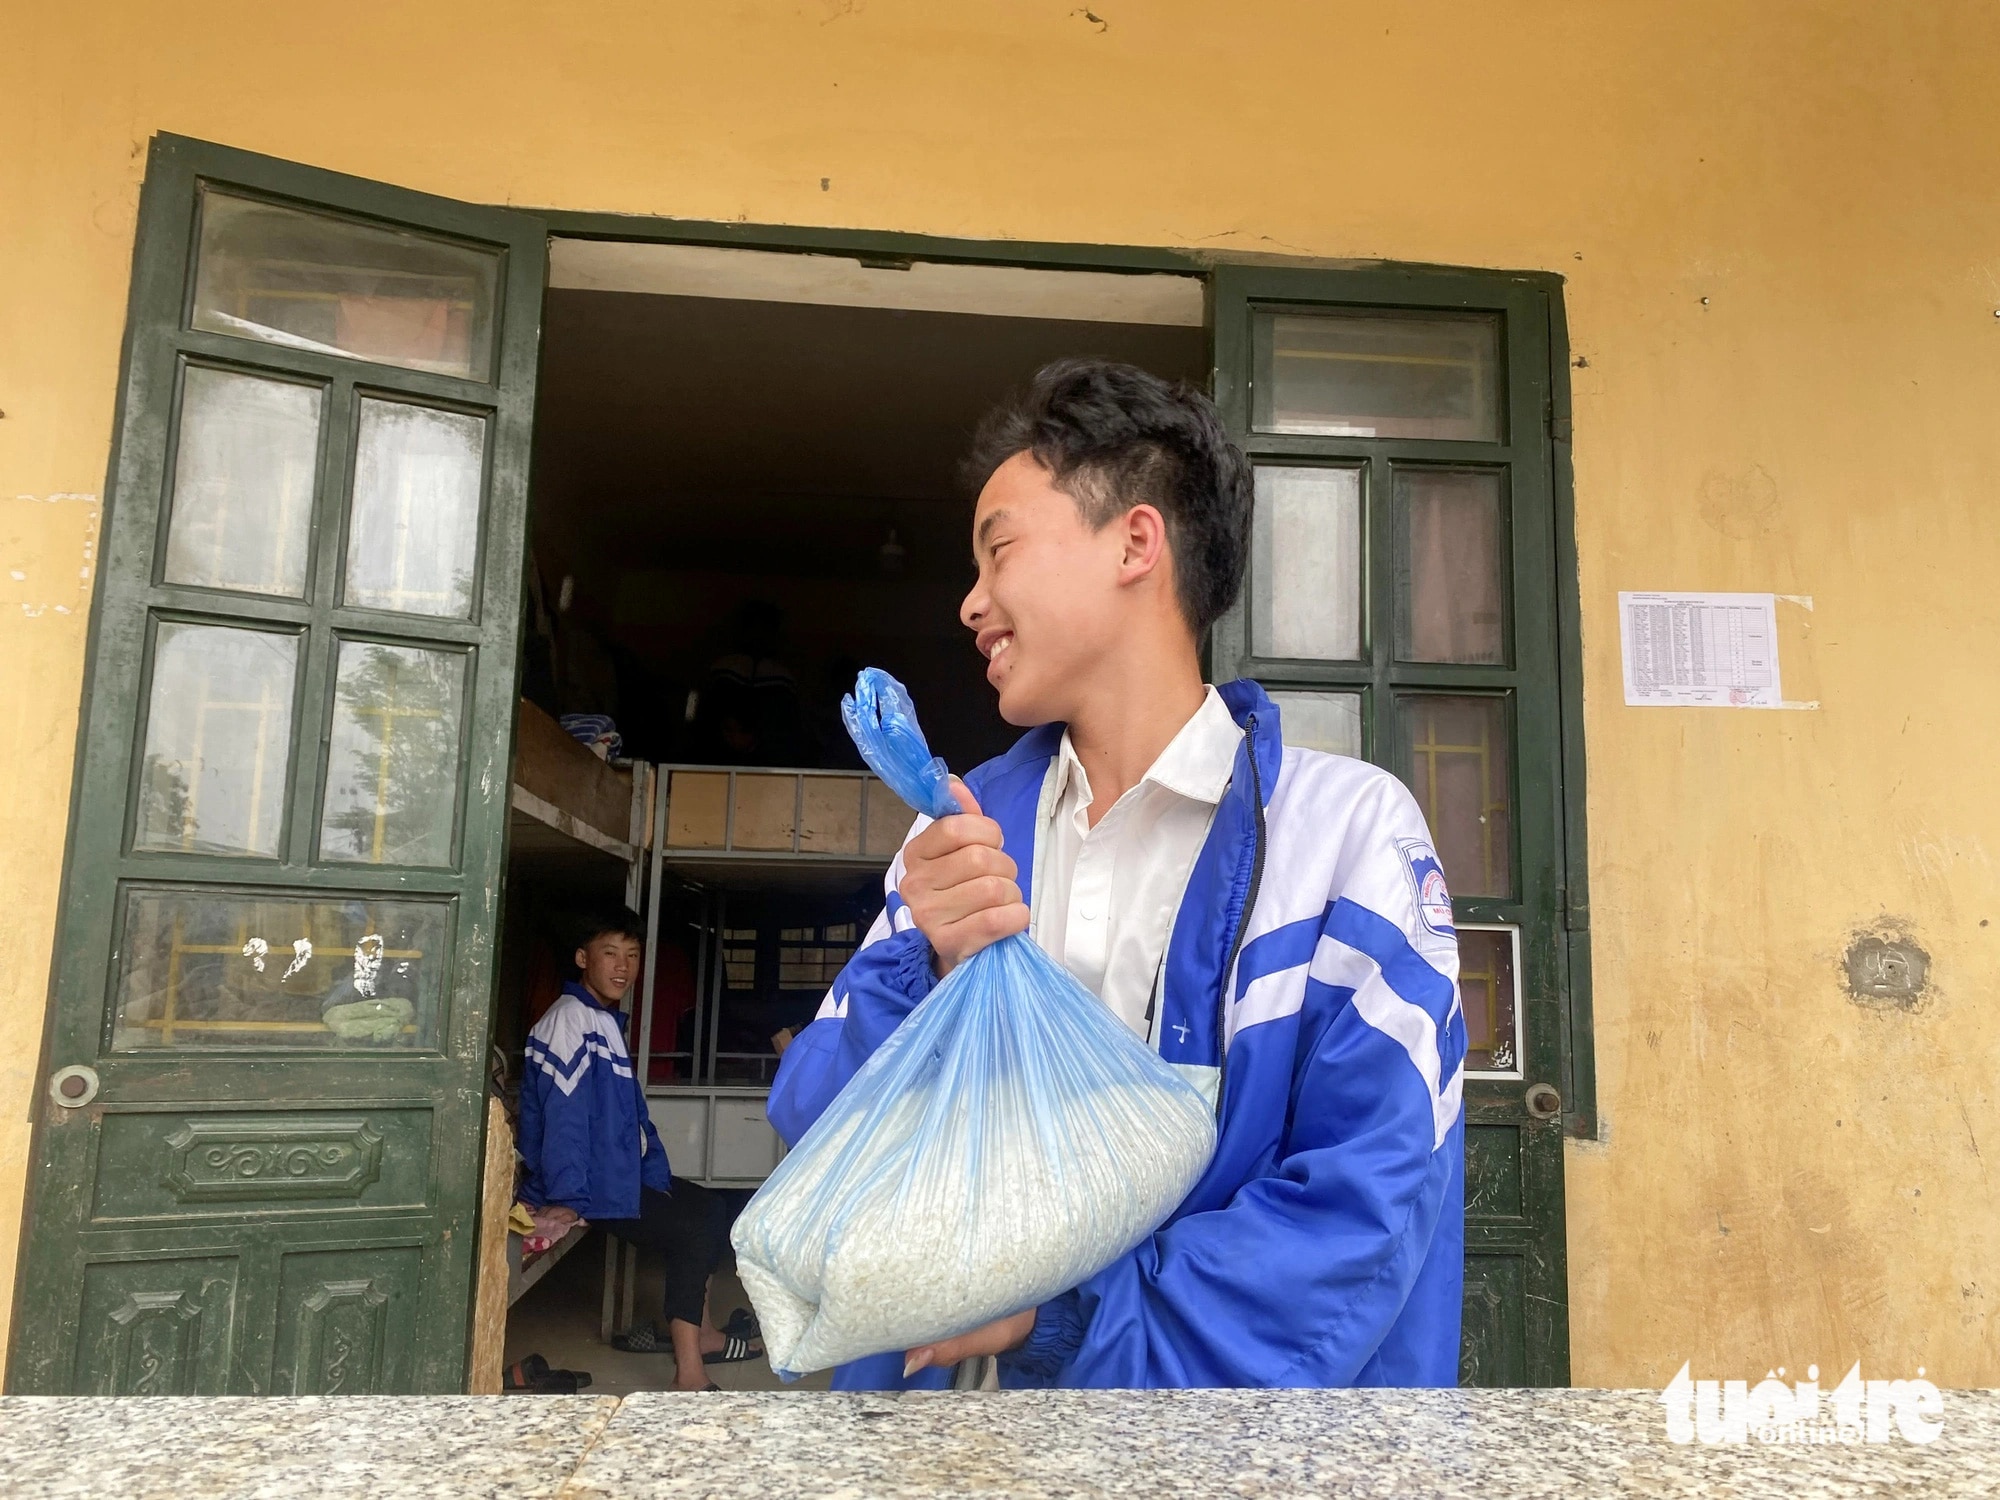 Học sinh trường phổ thông dân tộc bán trú THCS Lao Chải mang gạo từ nhà tới cho nhà trường mượn - Ảnh: C. TUỆ